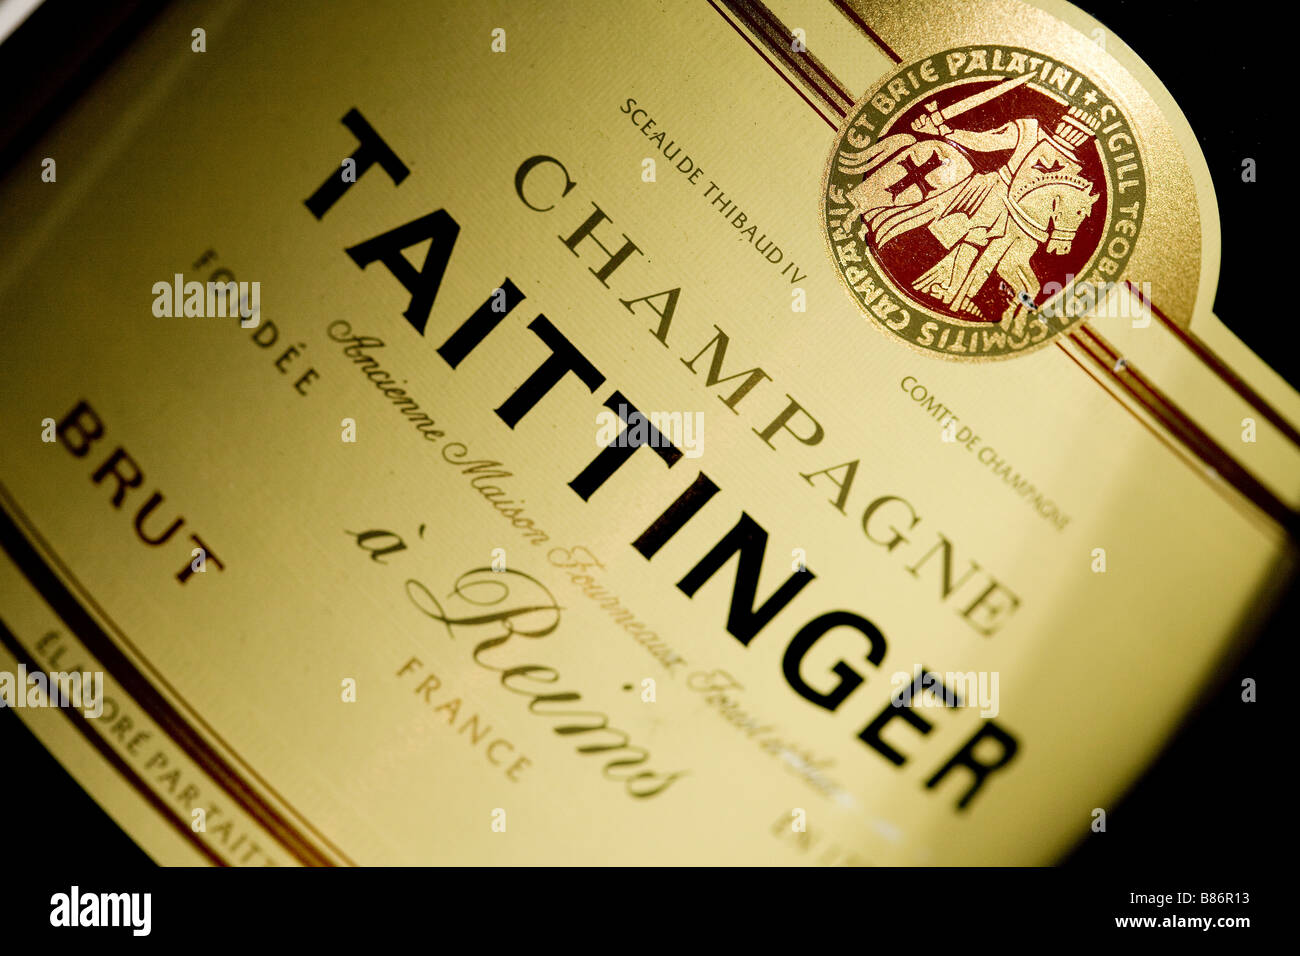 Champagner Etiketten Stockfotos Und Bilder Kaufen Alamy